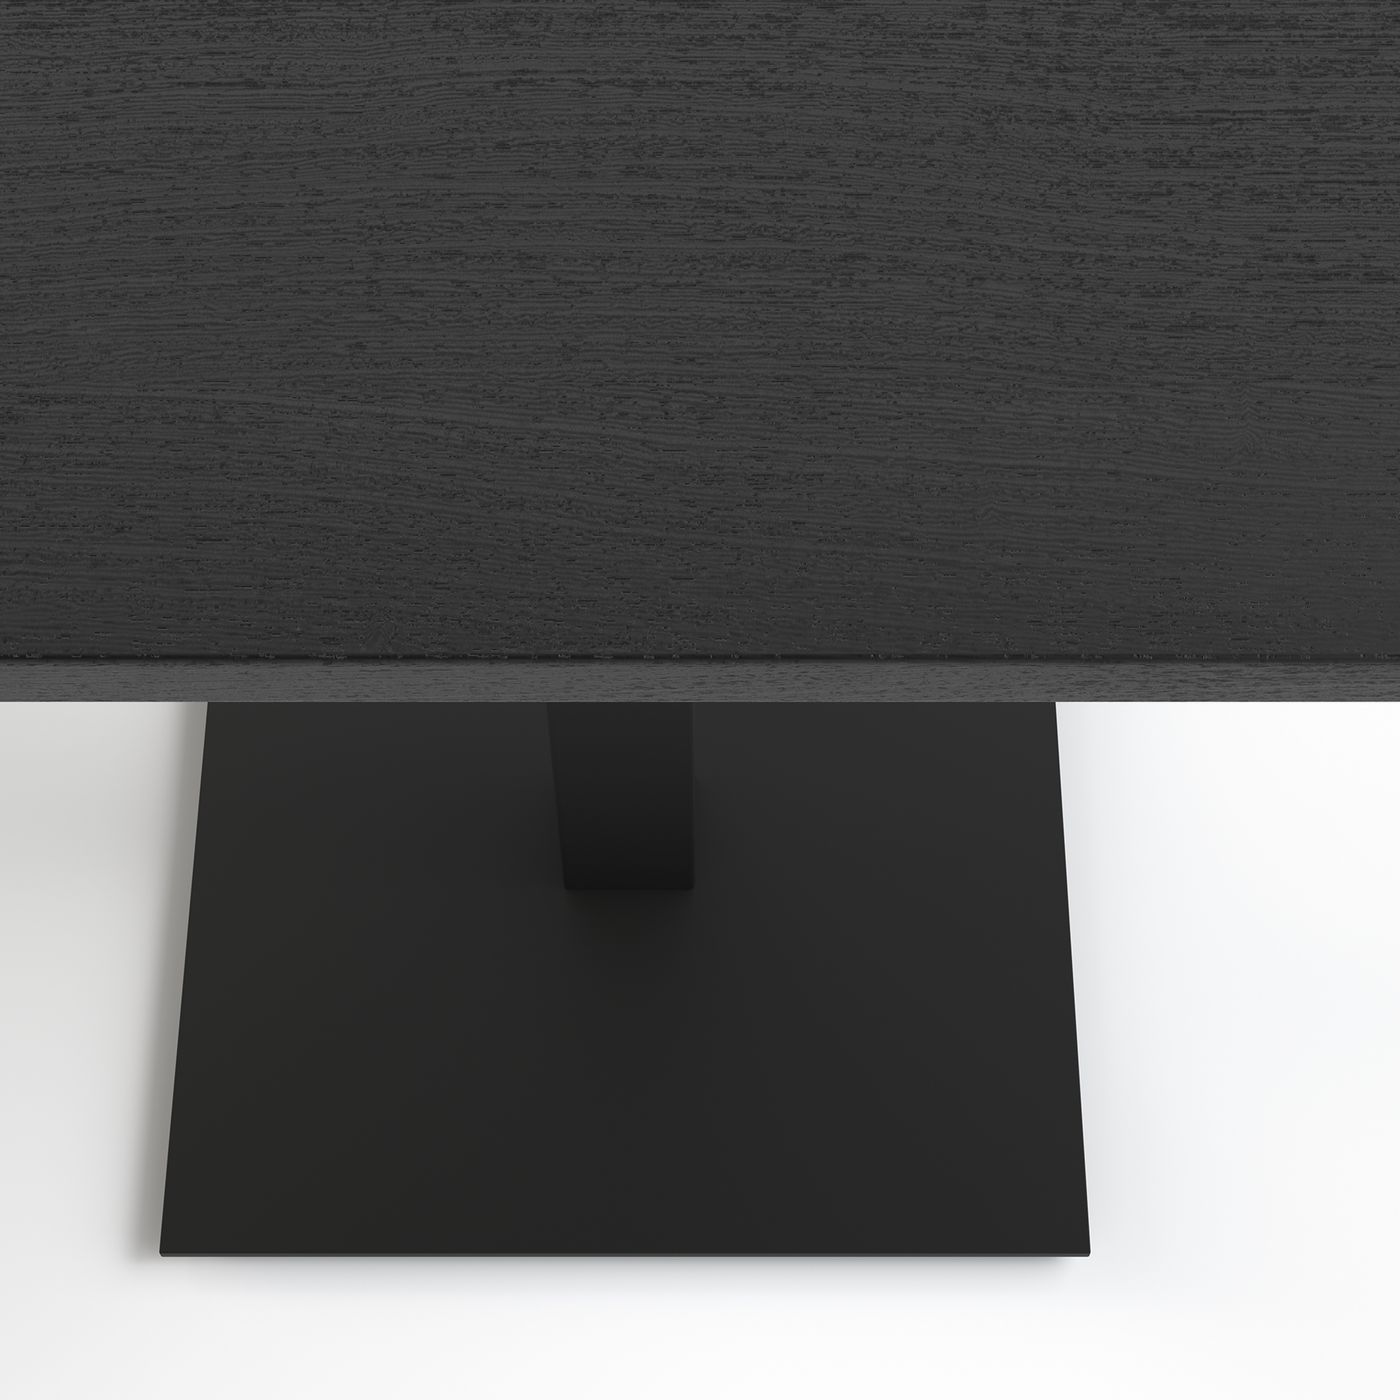 Стол Tetra light 60 х 60 чёрный металл / чёрное ДСП (текстура)